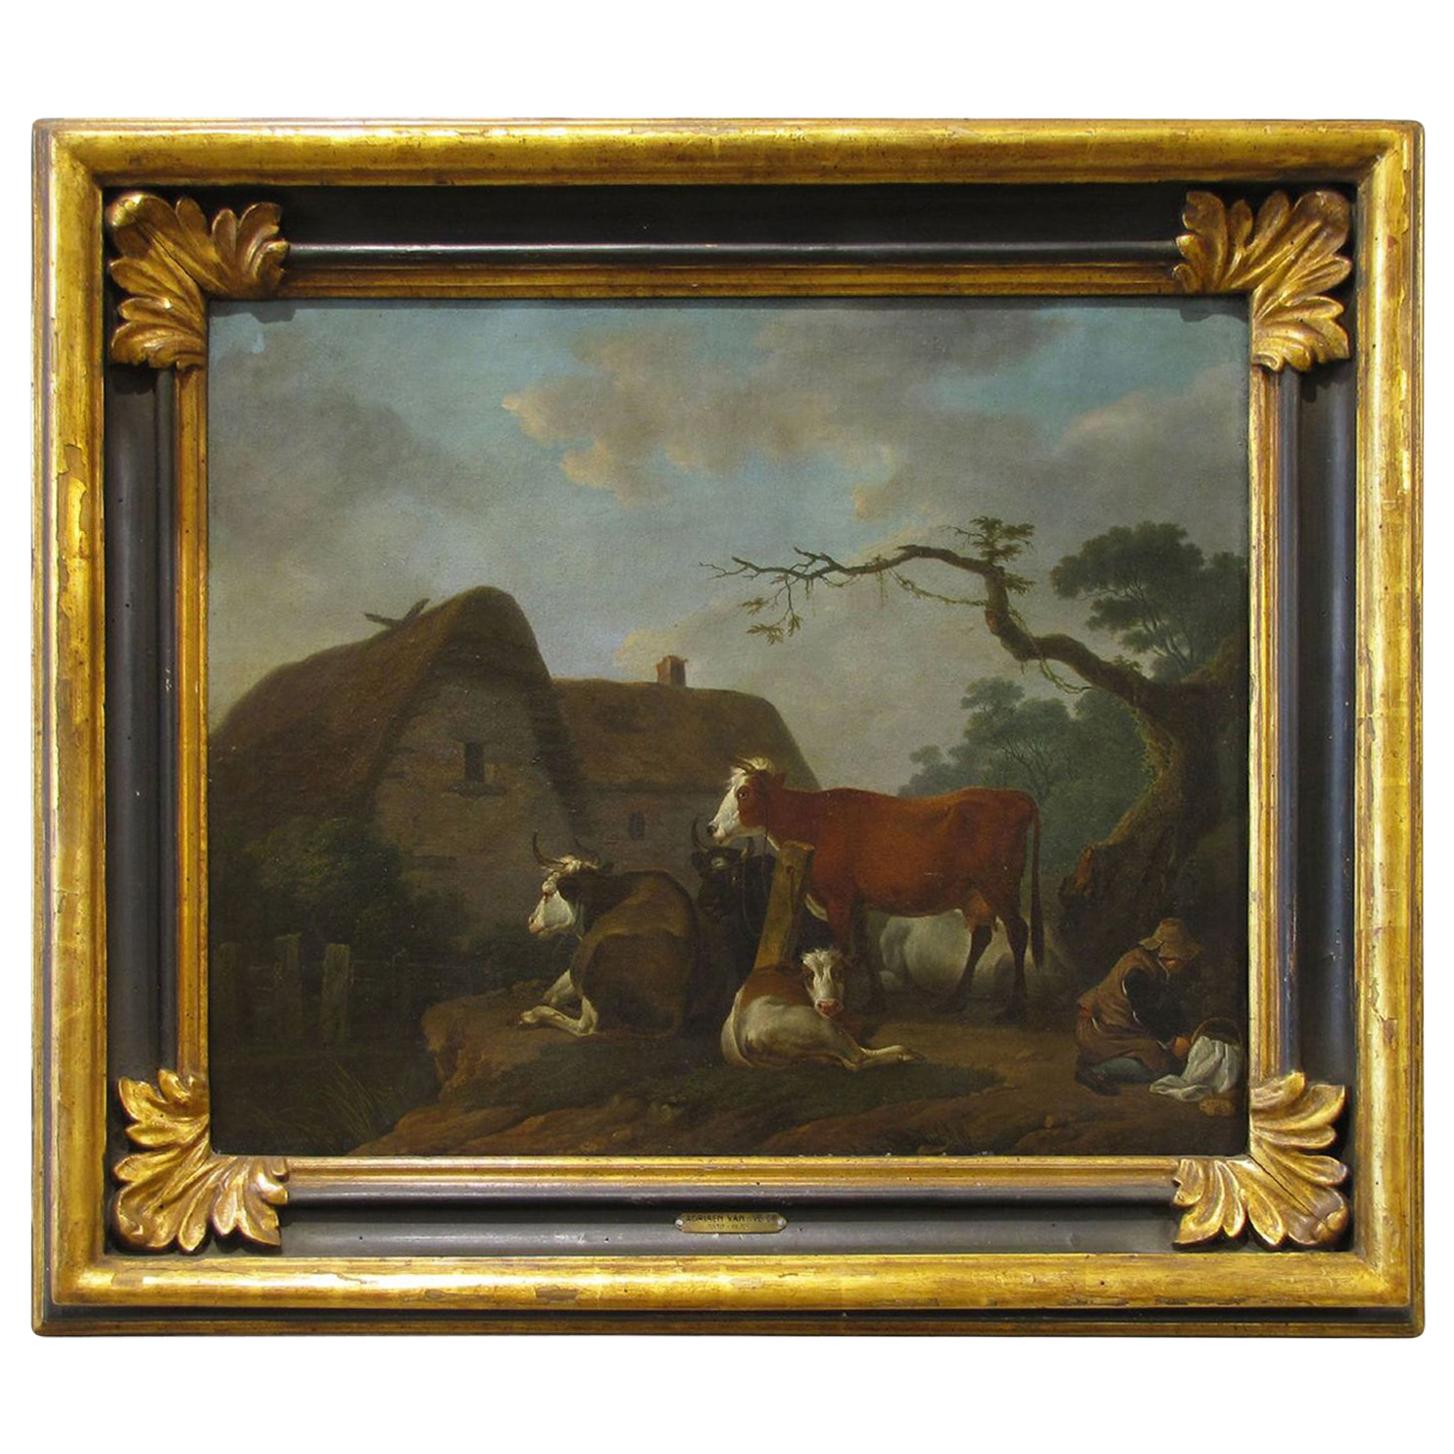 17th Century Oil on Canvas Landscape Painting by Adriaen van de Velde